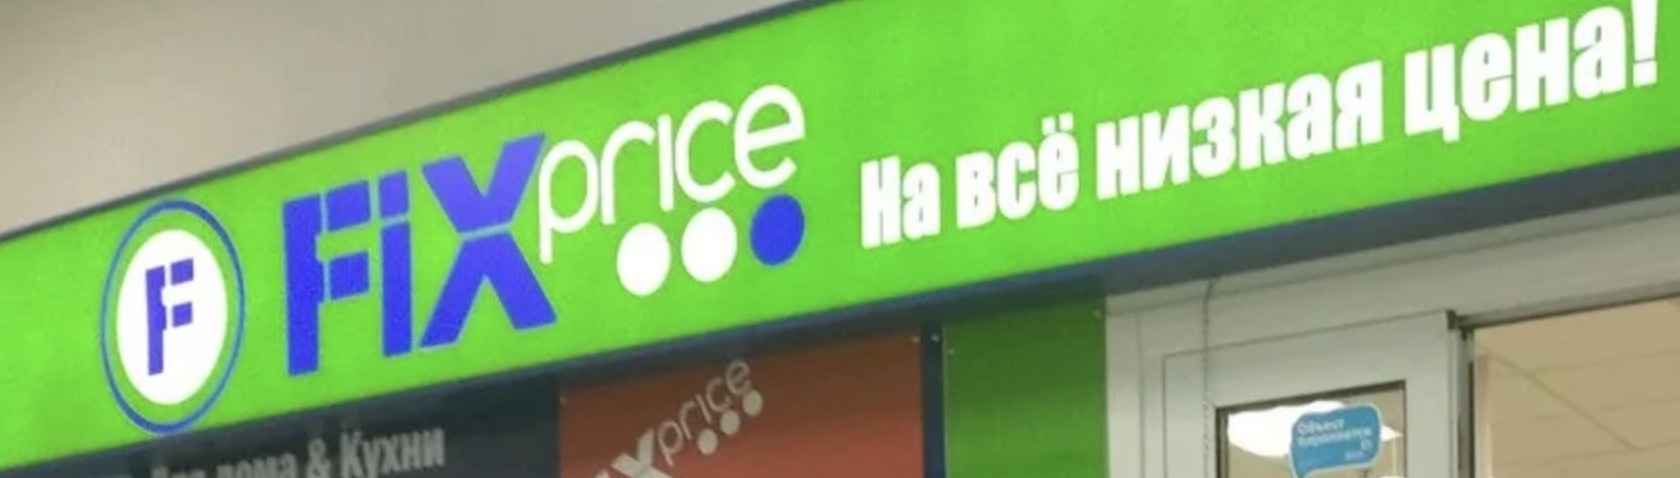 Российский интернет-магазин начал нанимать новых сотрудников с помощью голосового робота